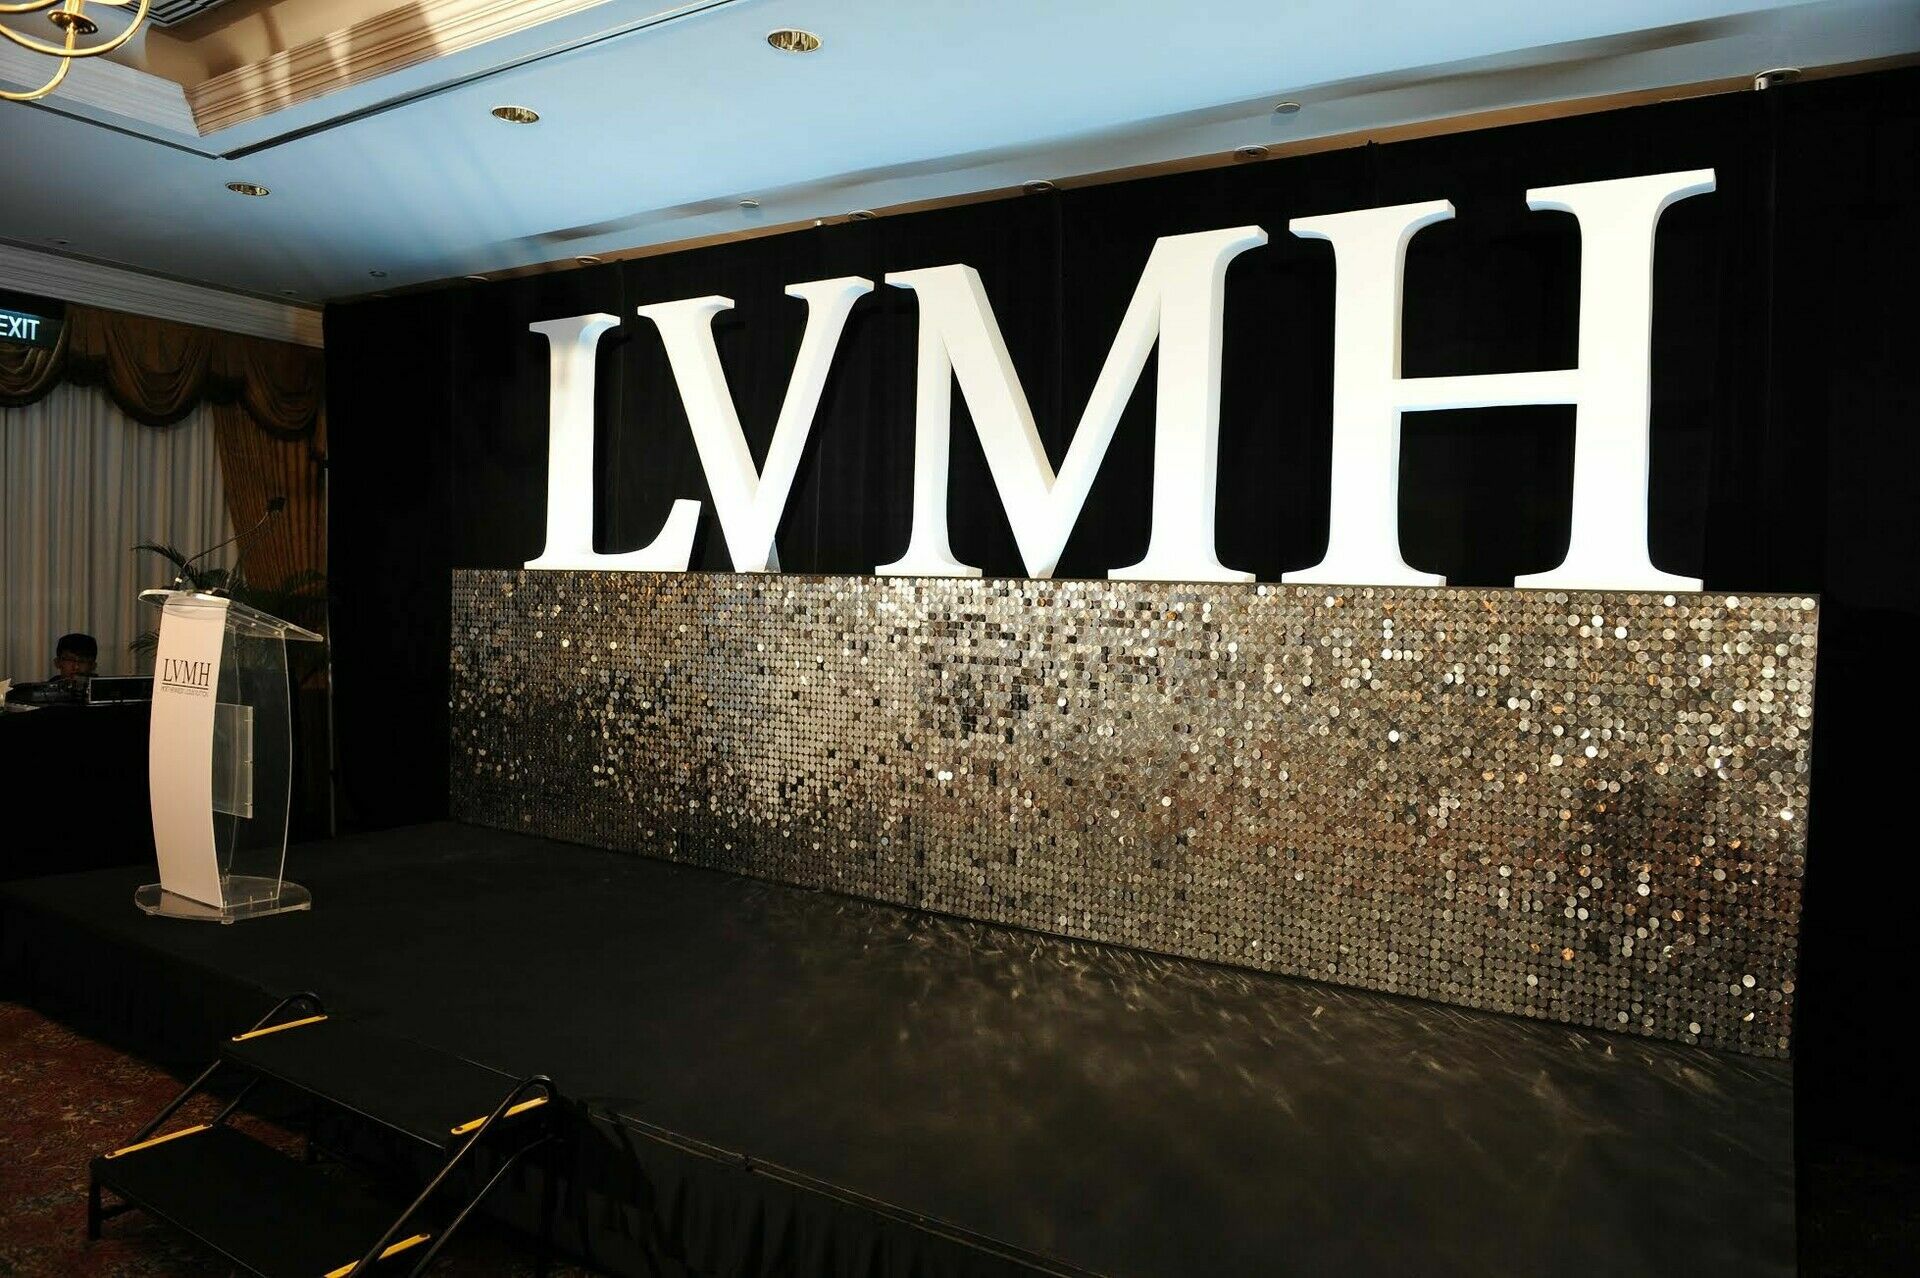 Выручка группы LVMH выросла в 2021 году в полтора раза